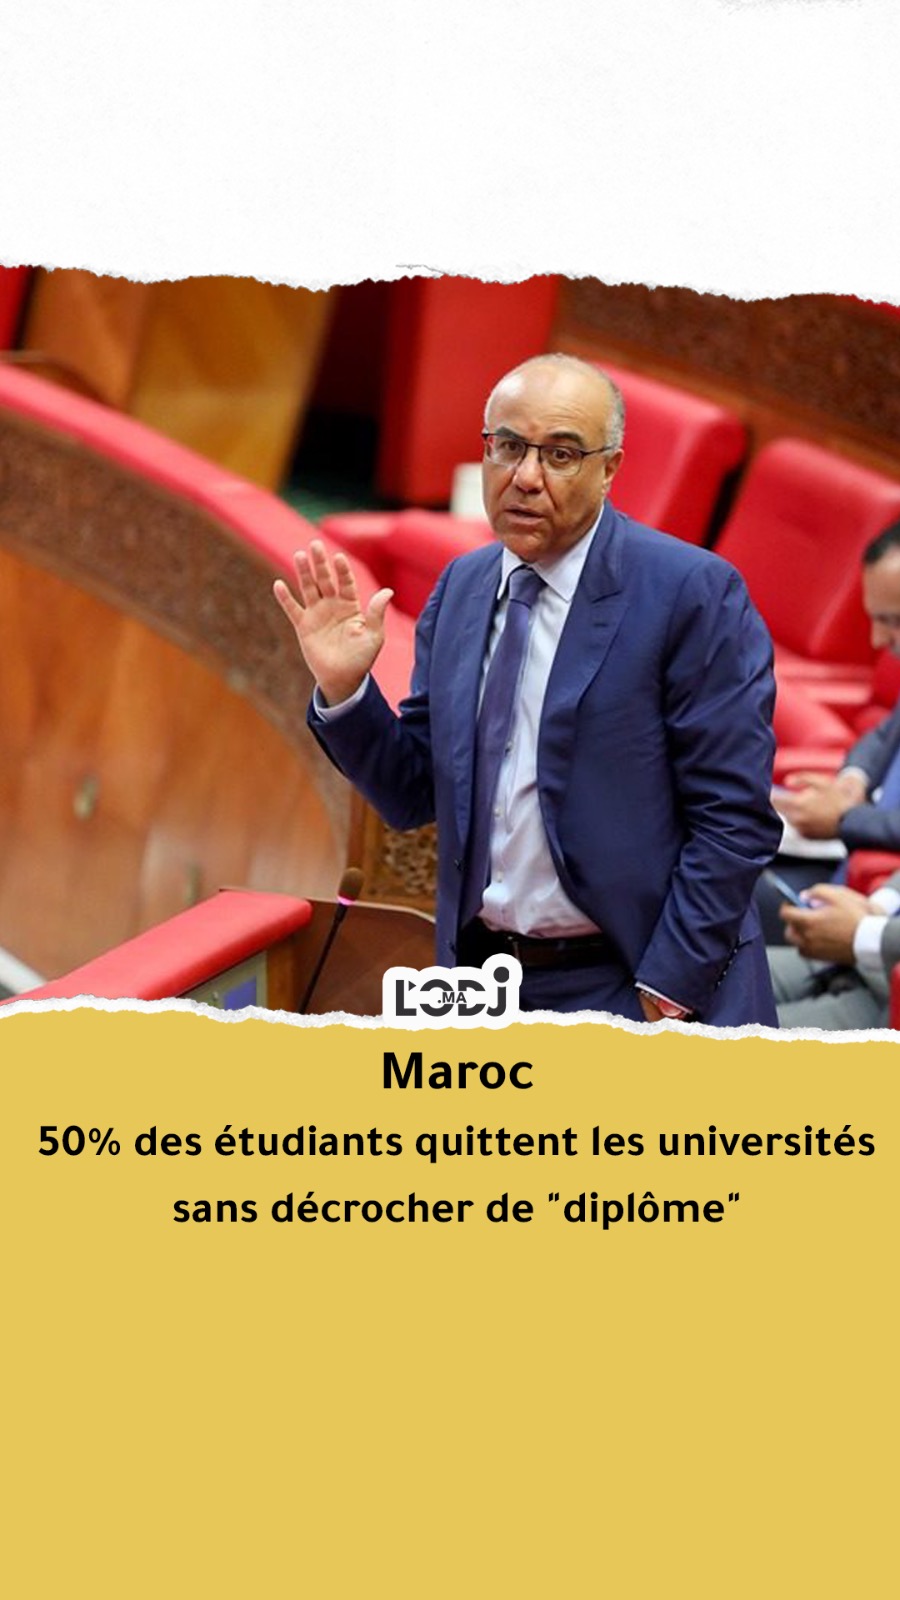 Maroc : 50% des étudiants quittent les universités sans décrocher de "diplôme"